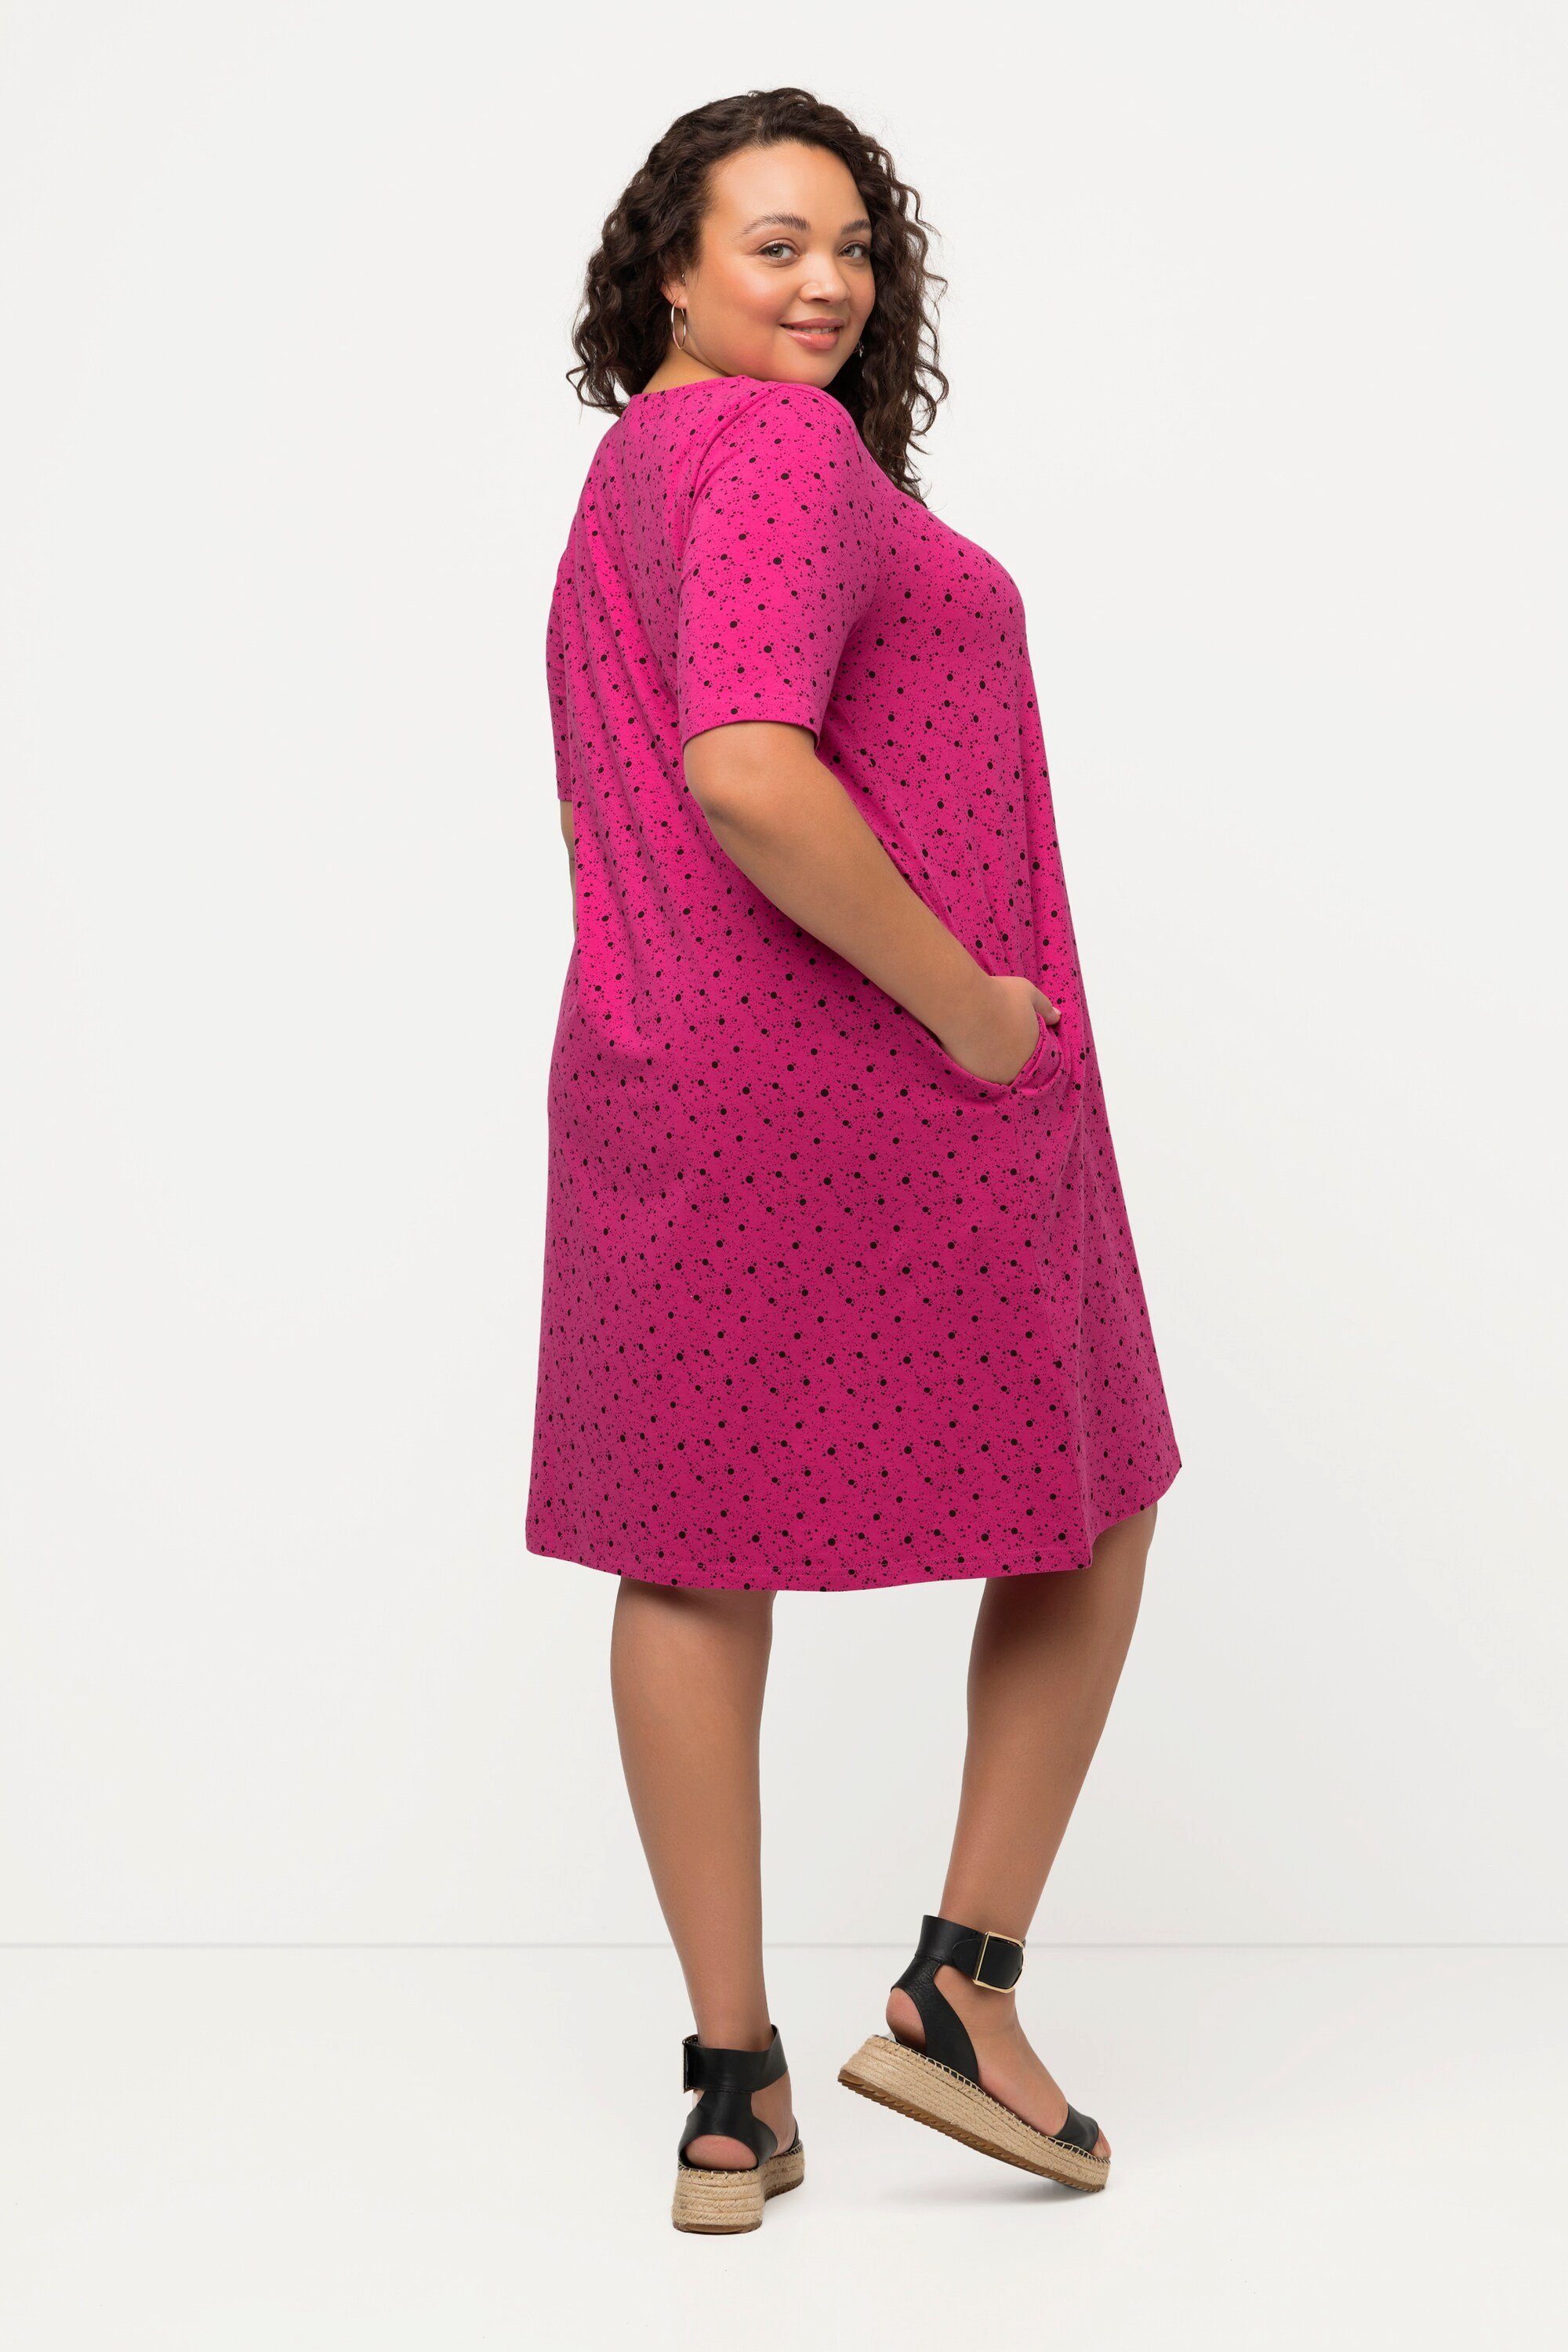 Ulla Popken Halbarm A-Linie Jerseykleid Kleid fuchsia Punkte V-Ausschnitt pink